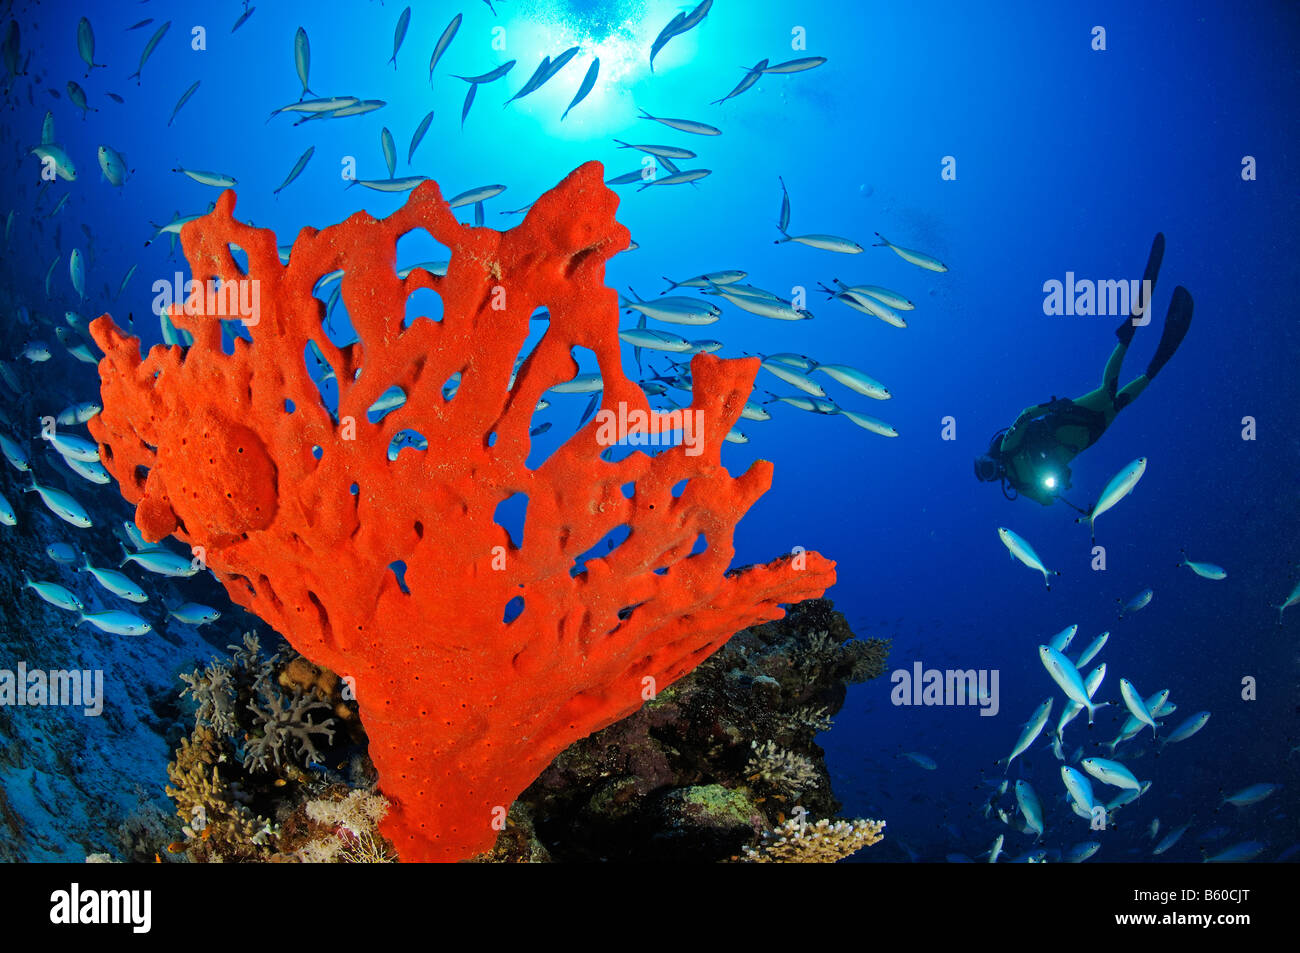 Latrunculia magnifica, Negombata magnifica,  red fire sponge and scuba diver, Red Sea Stock Photo